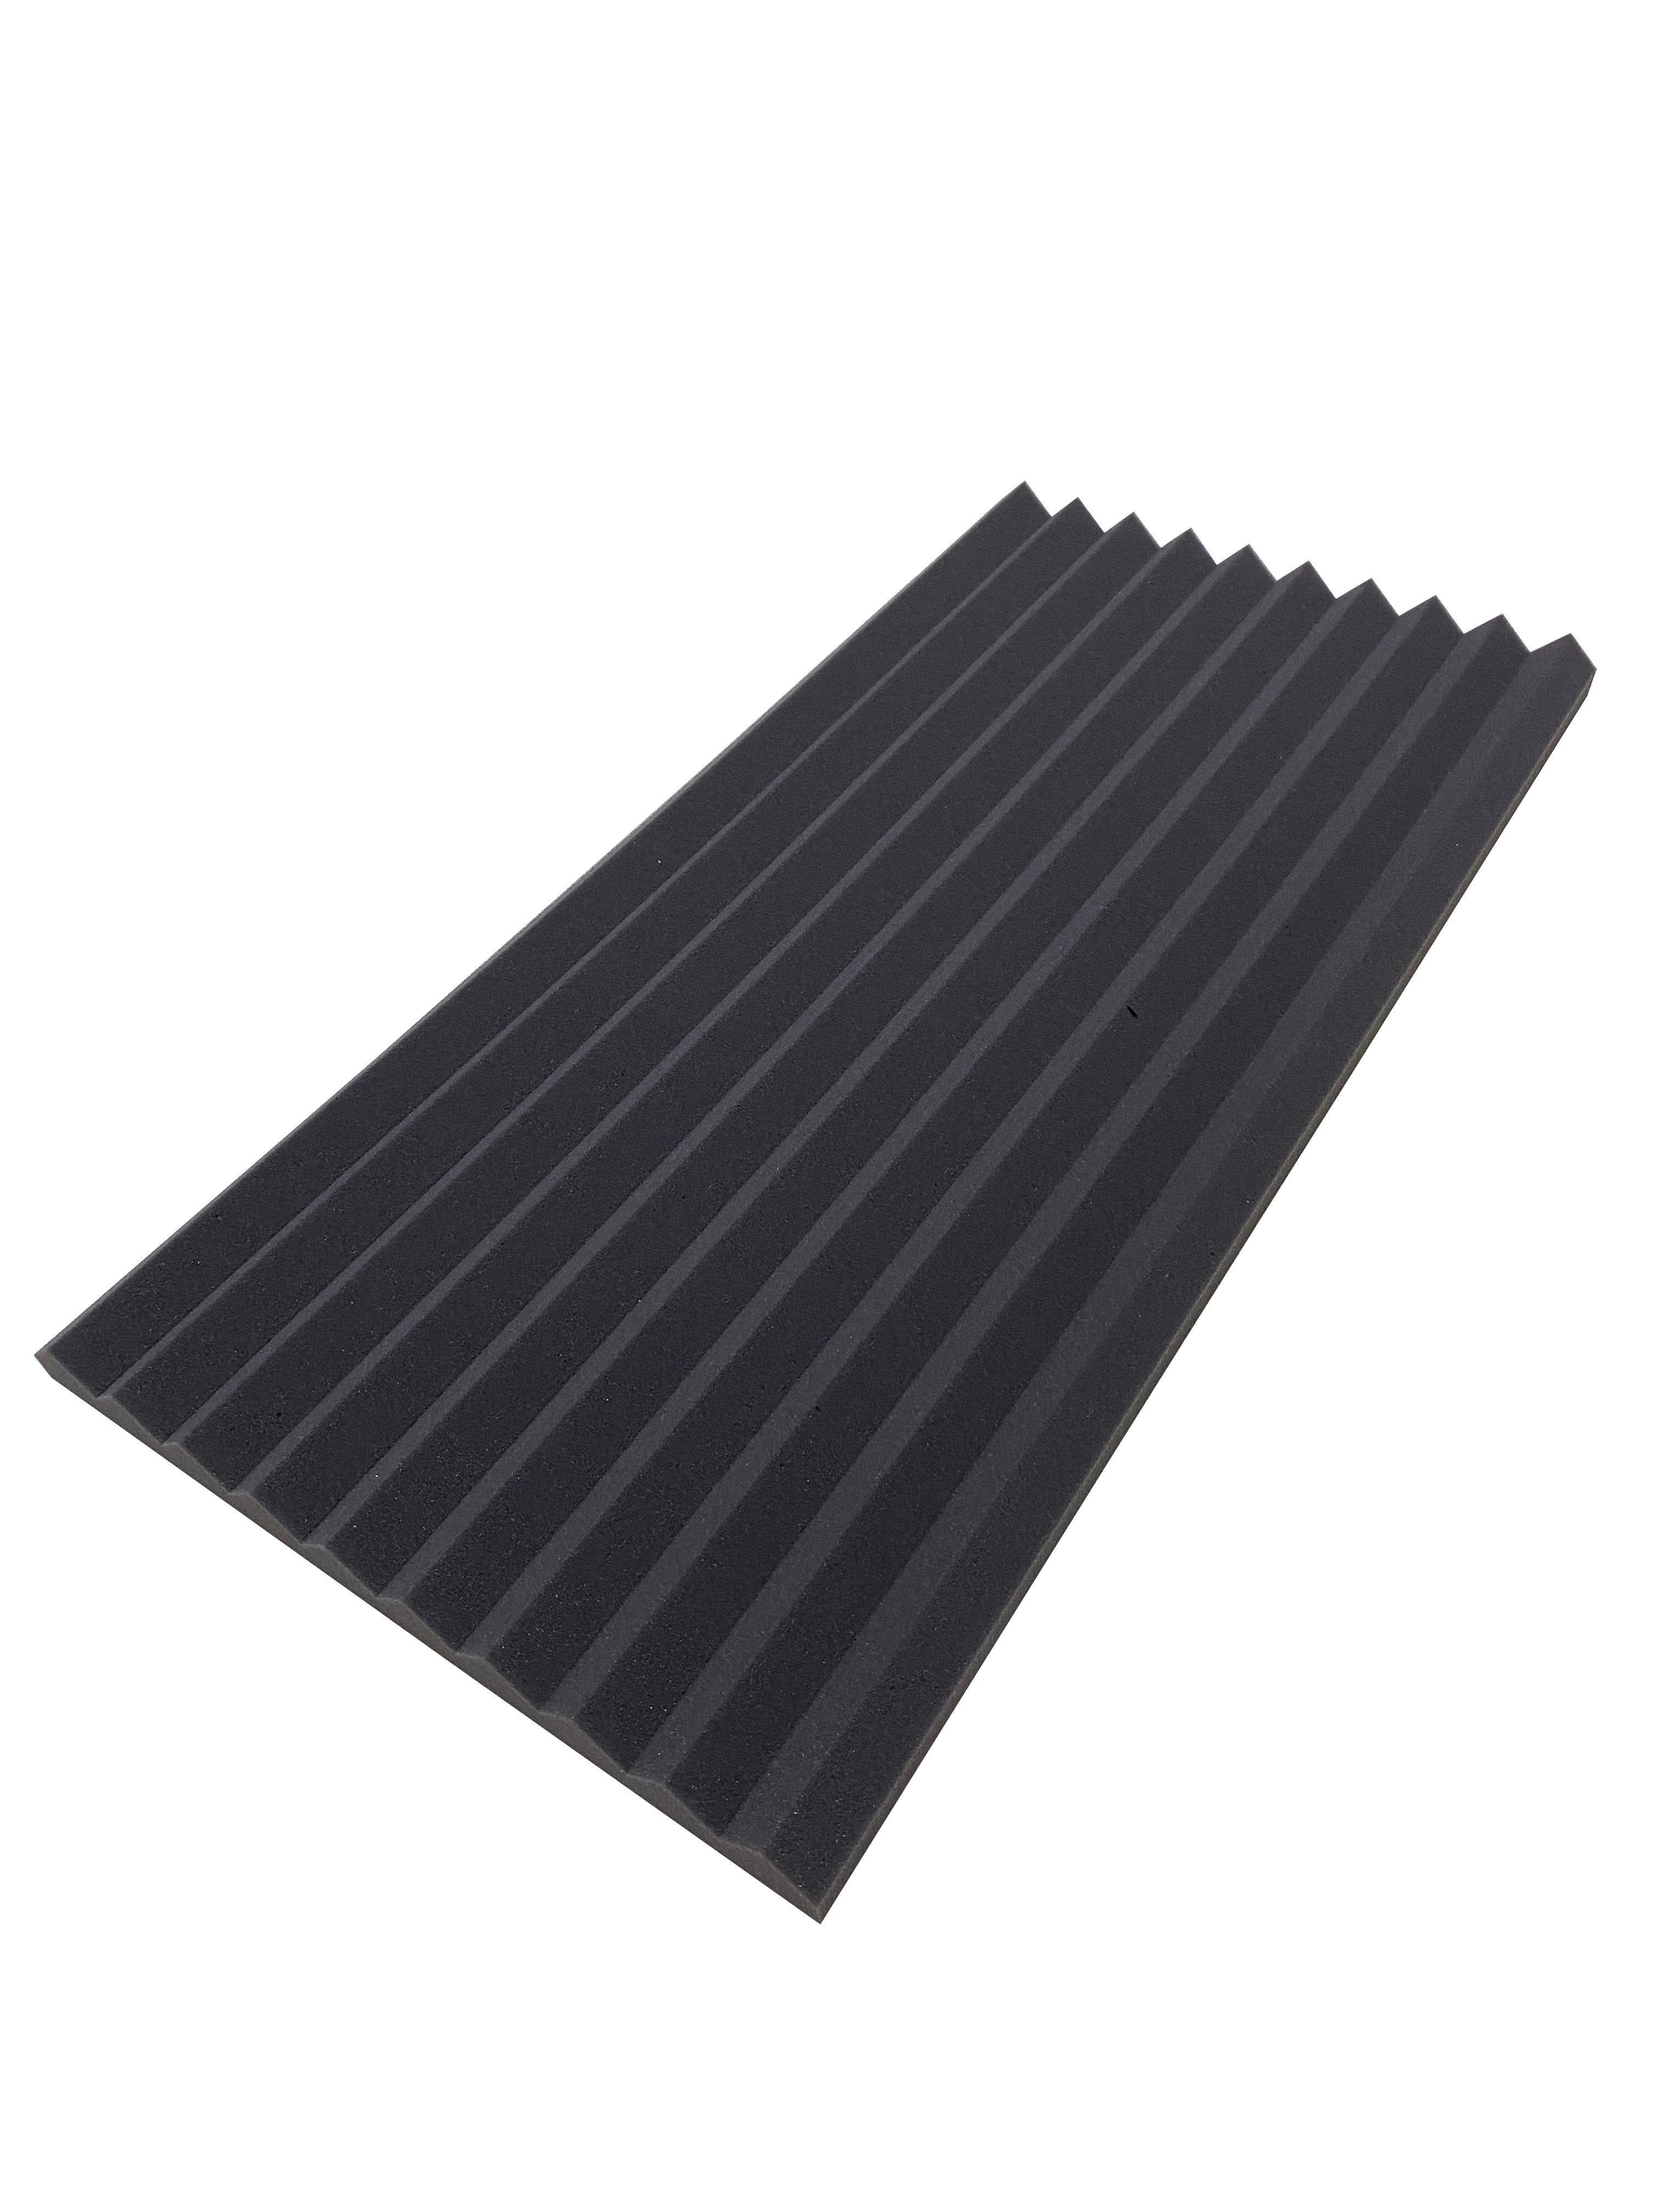 Buy dark-grey Wedge PRO 30&quot;x15&quot; Acoustic Studio Foam Tile Kit